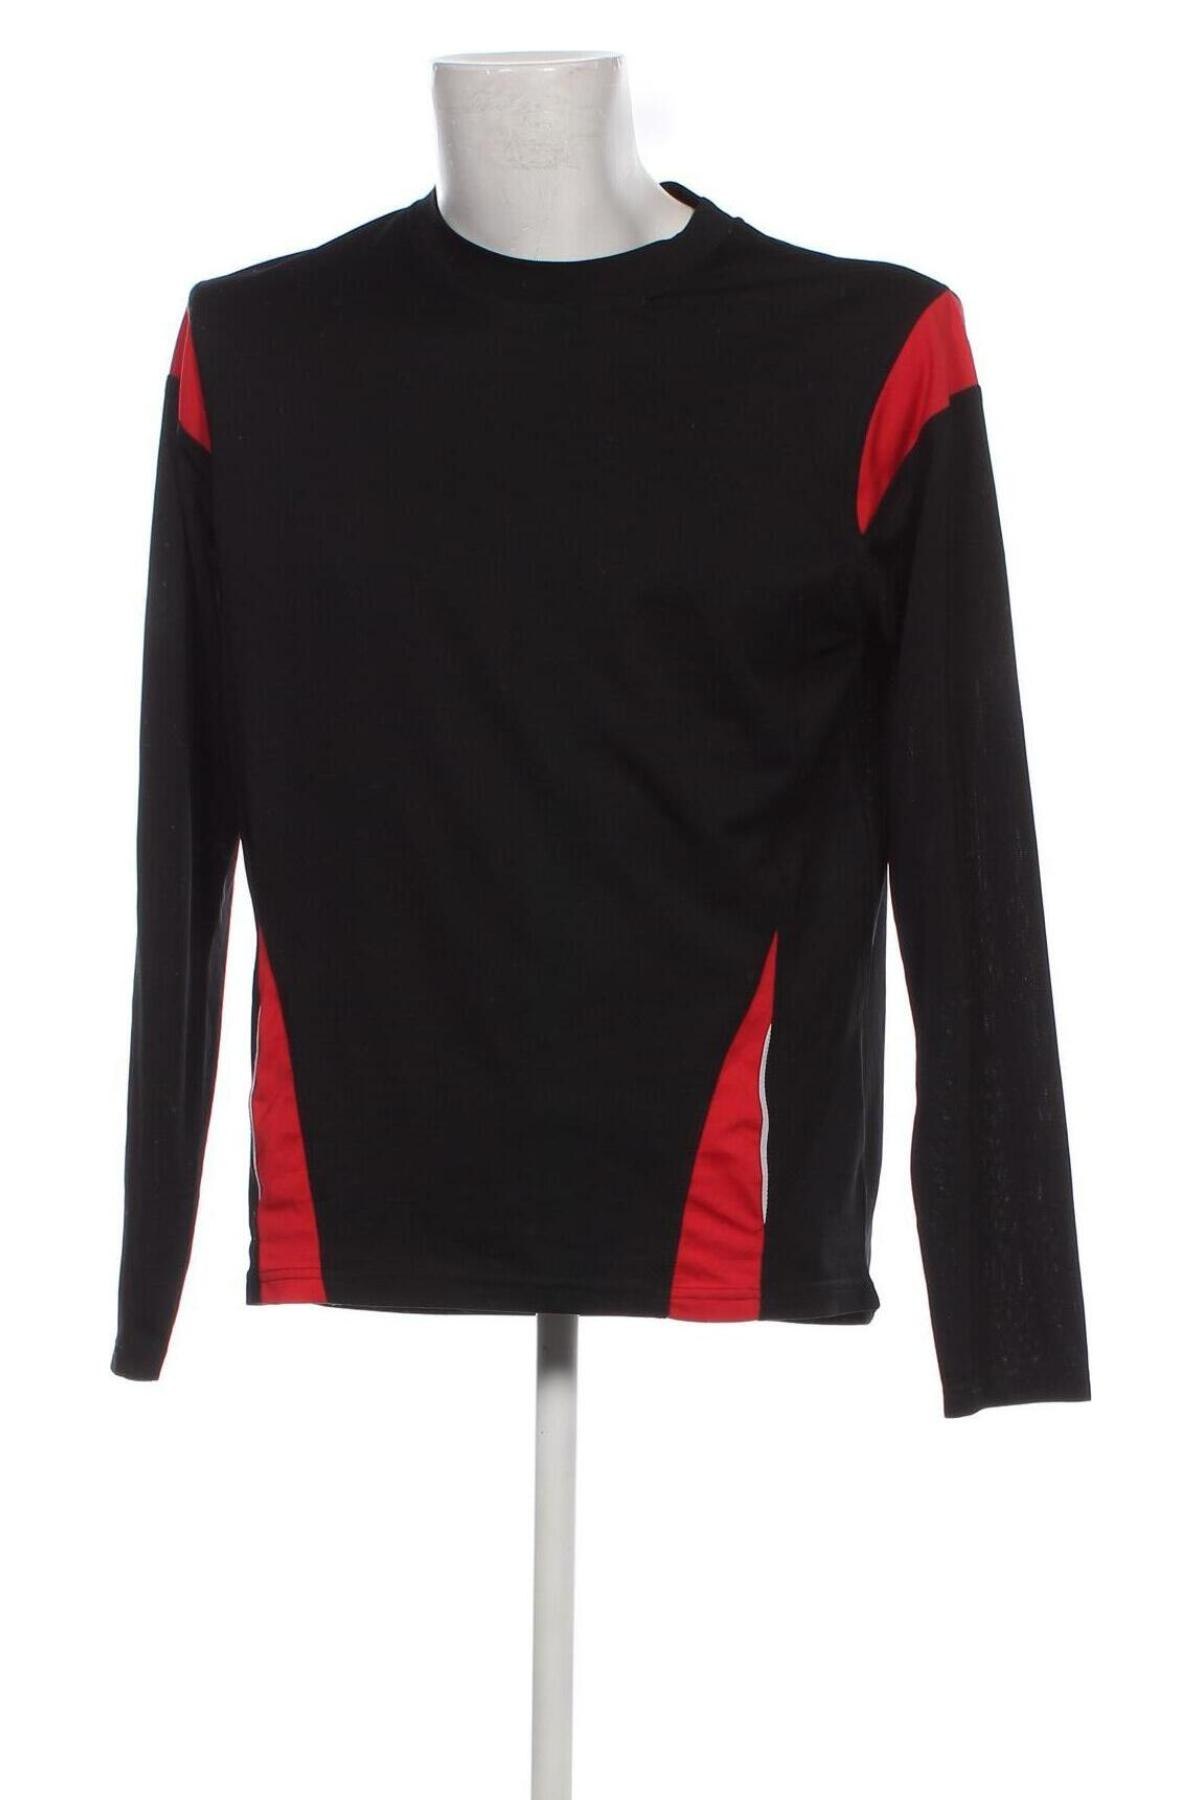 Herren Shirt 4 Sports, Größe L, Farbe Schwarz, Preis 3,36 €